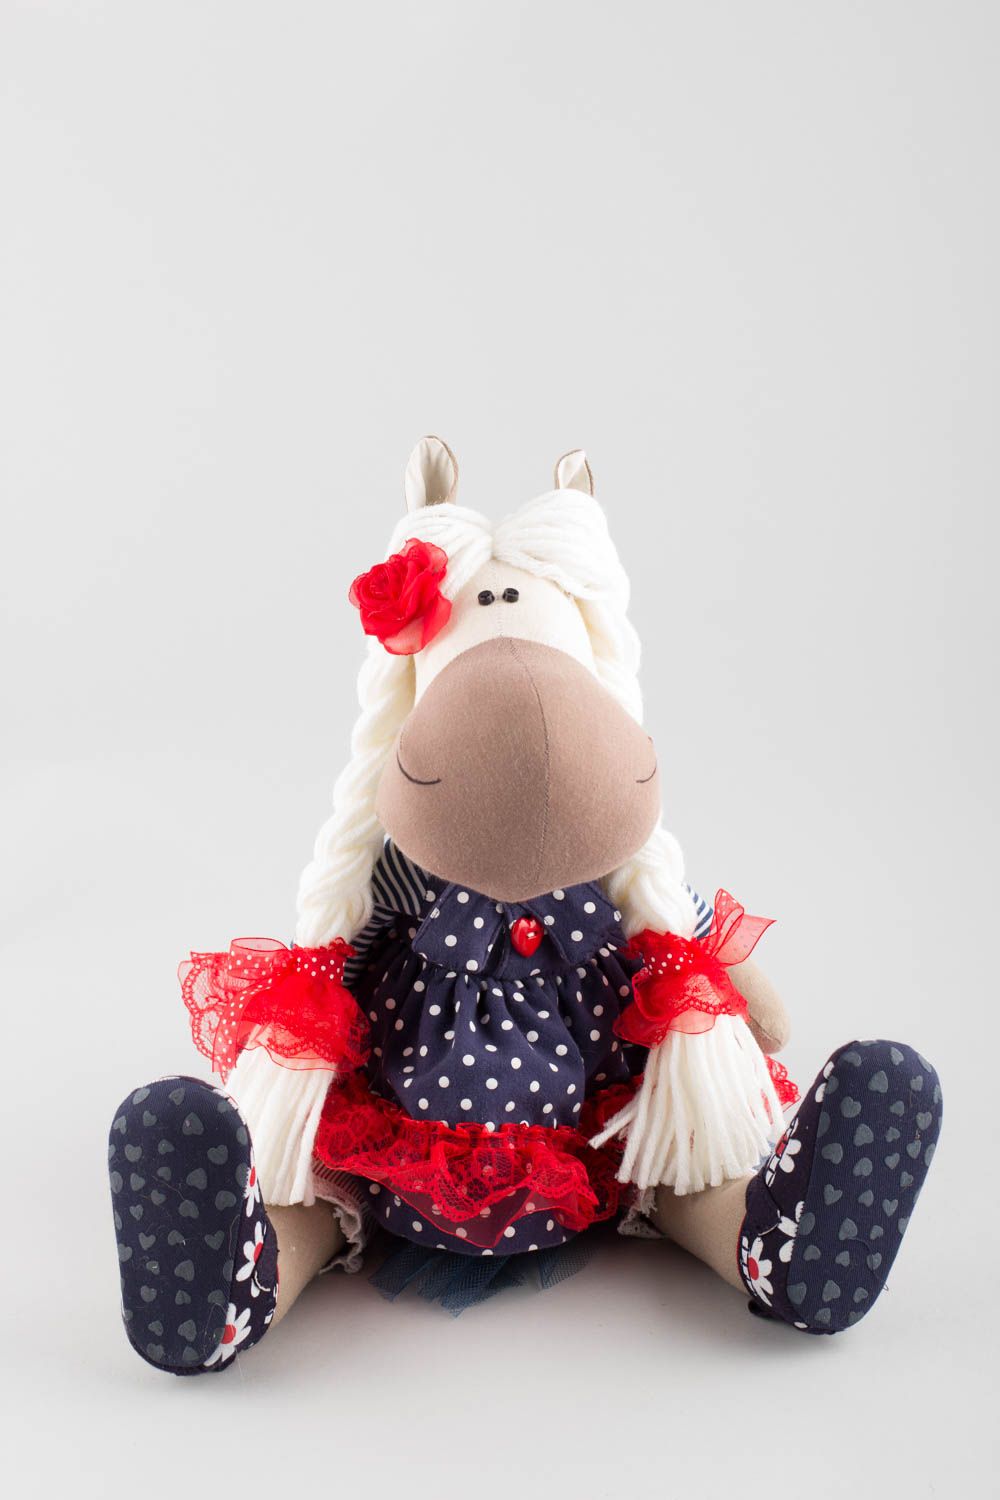 Textil Kuscheltier Pferd im Kleid grell schön modisch handmade für Kinder foto 4